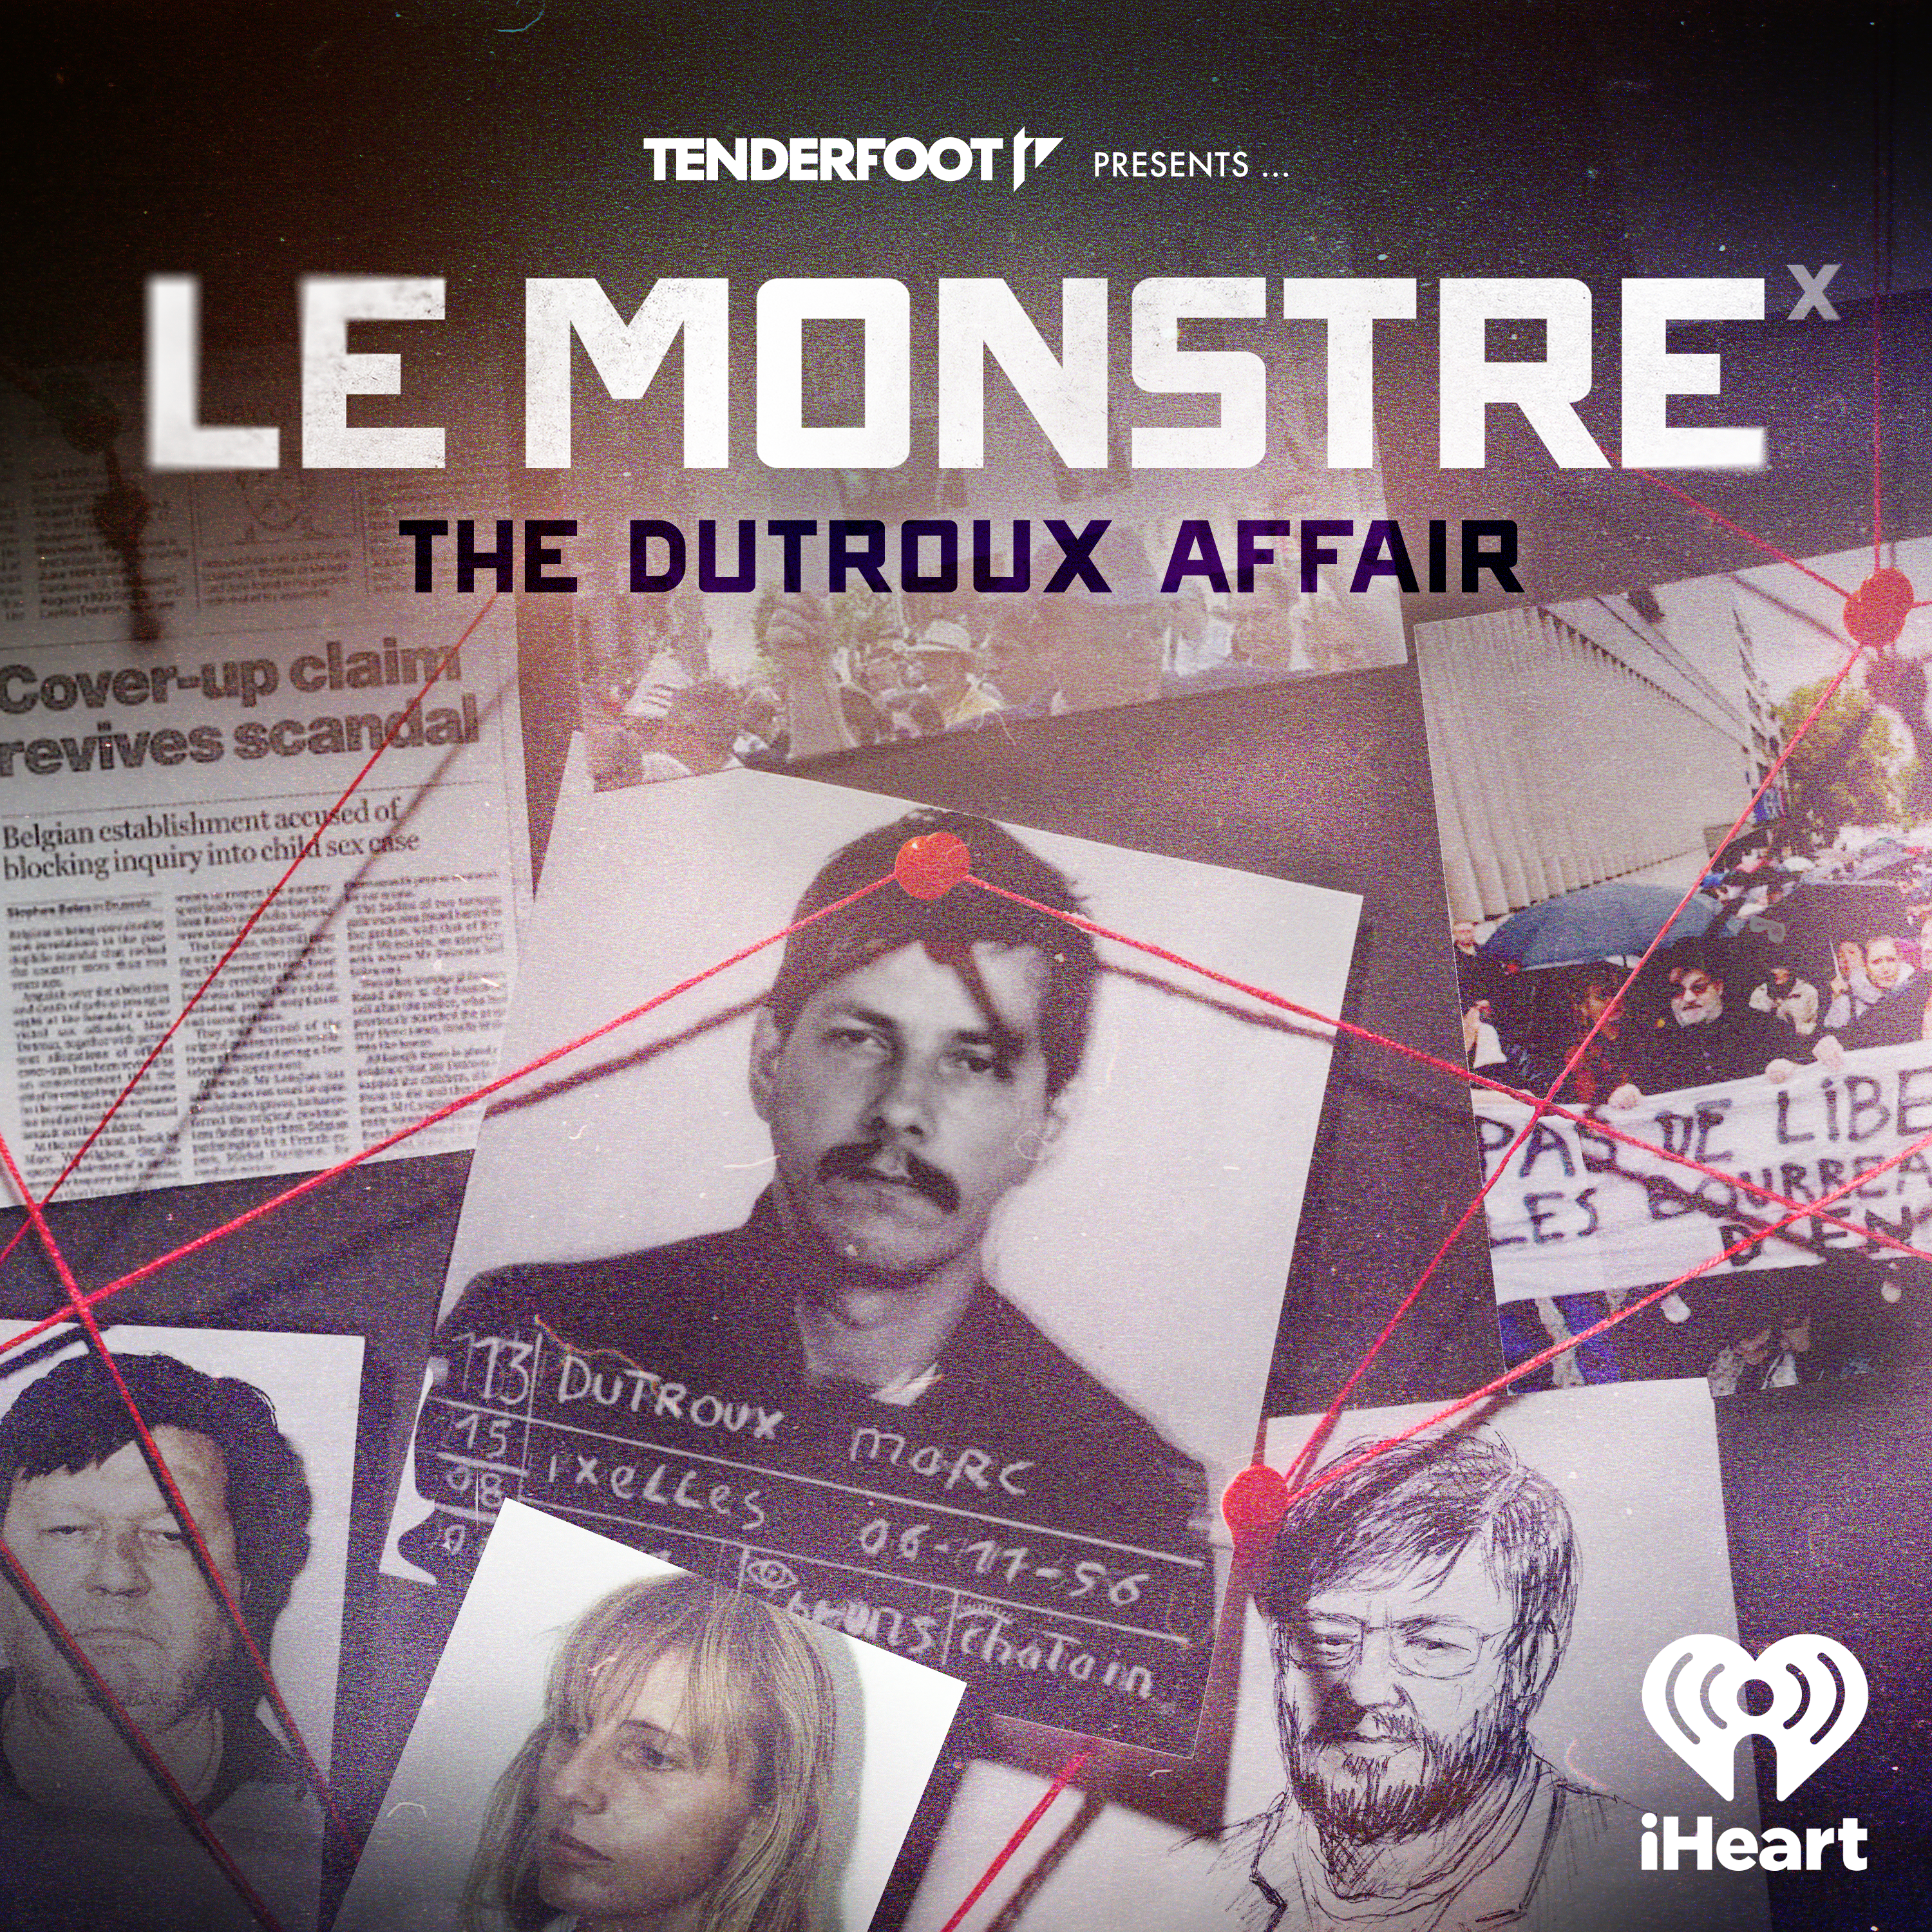 Le Monstre podcast show image